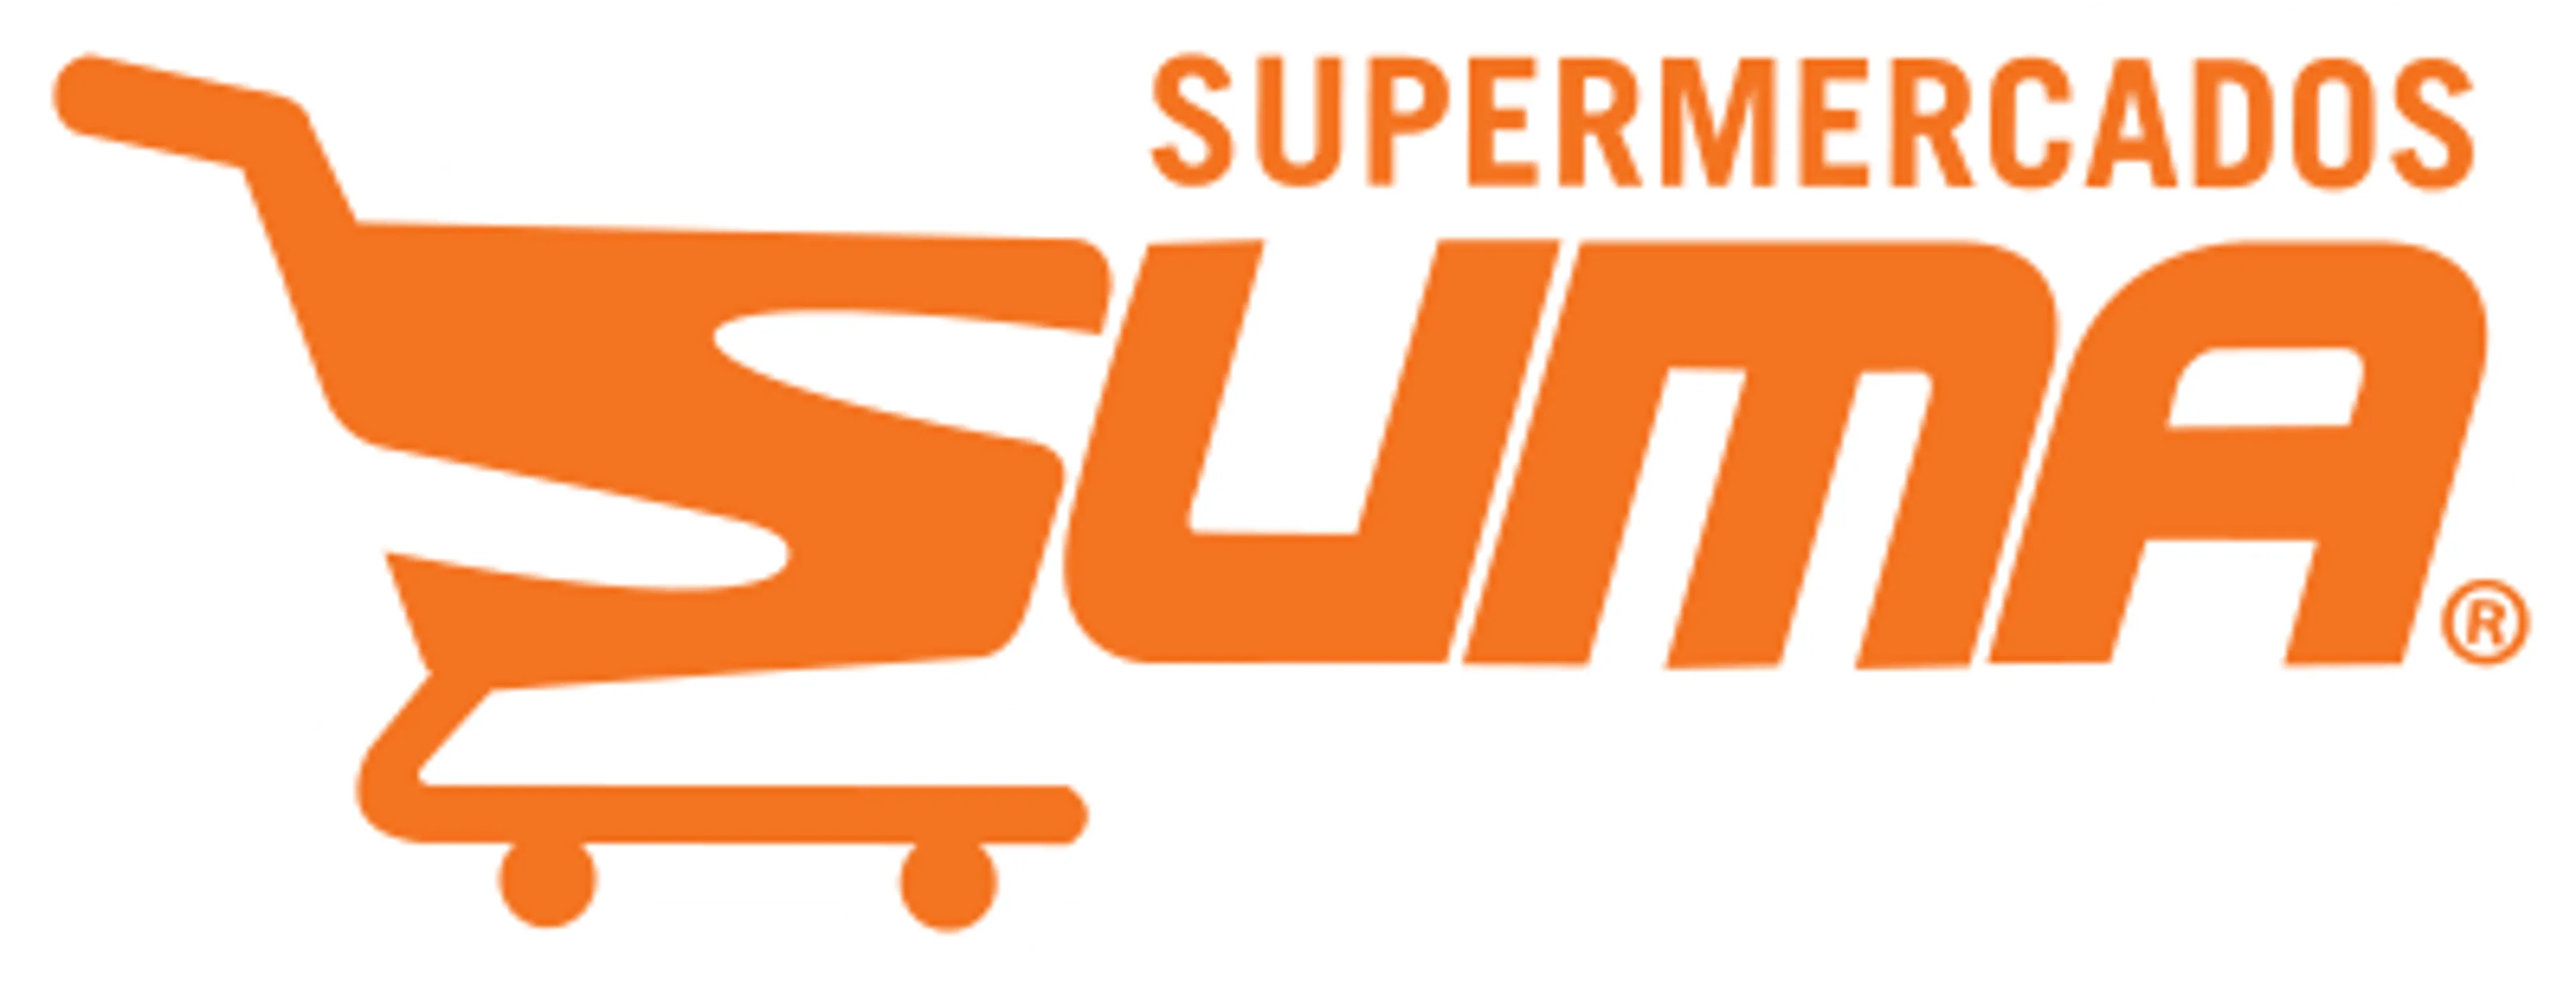 SUMA SUPERMERCADOS logo